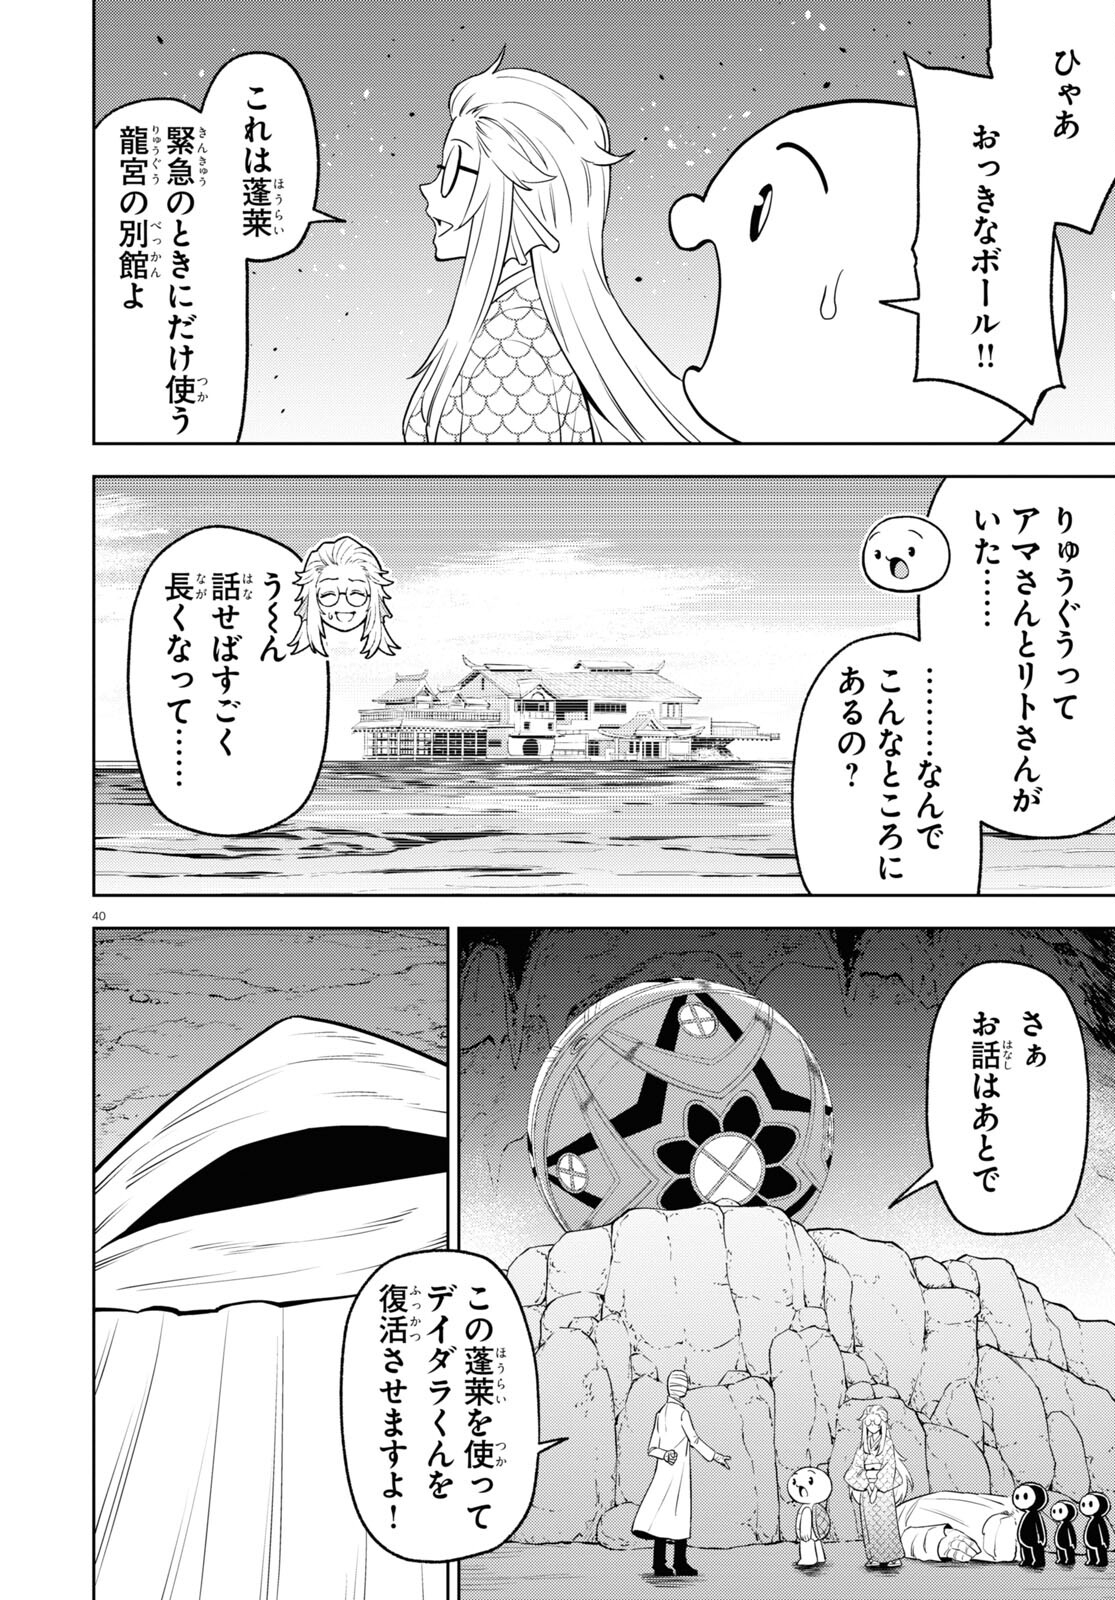 Maizen Sisters no Bouken – Mononokai Jinja to Tamayura no Hime - Chapter 15 - Page 40